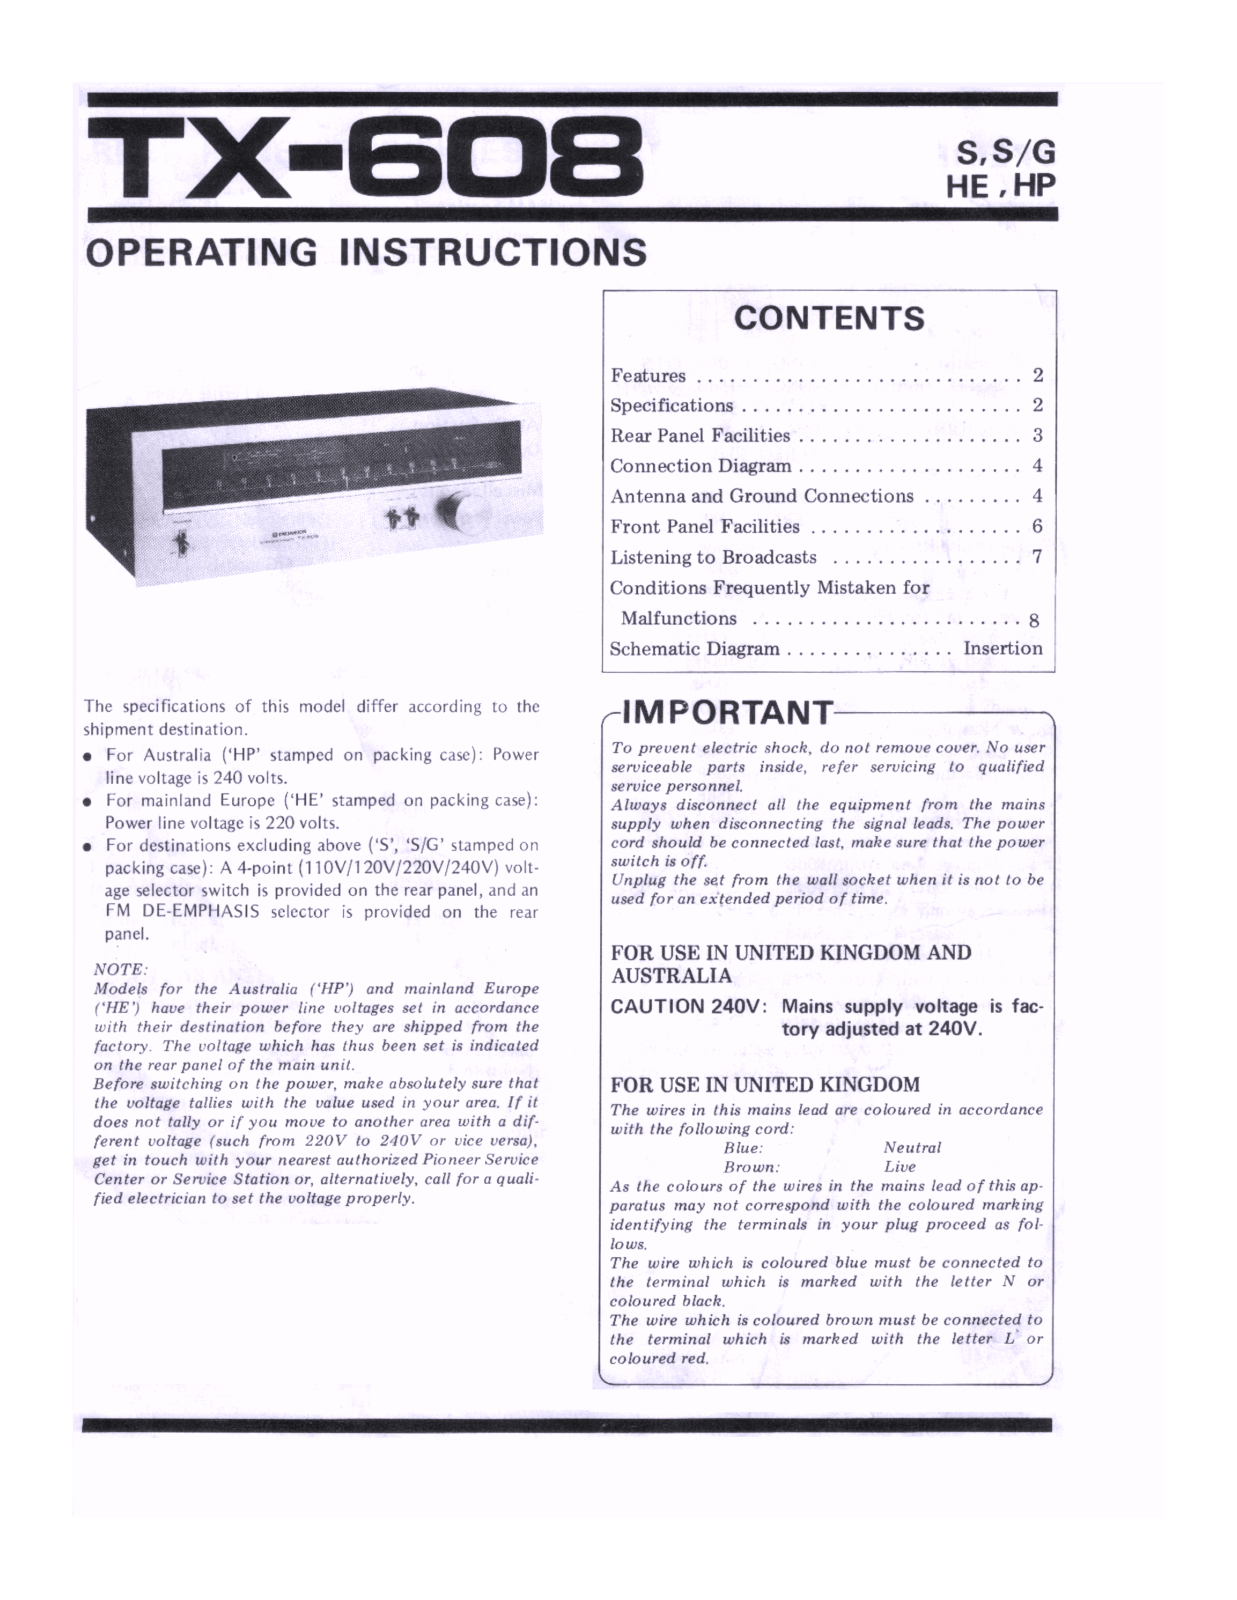 Pioneer TX-608 Owners manual